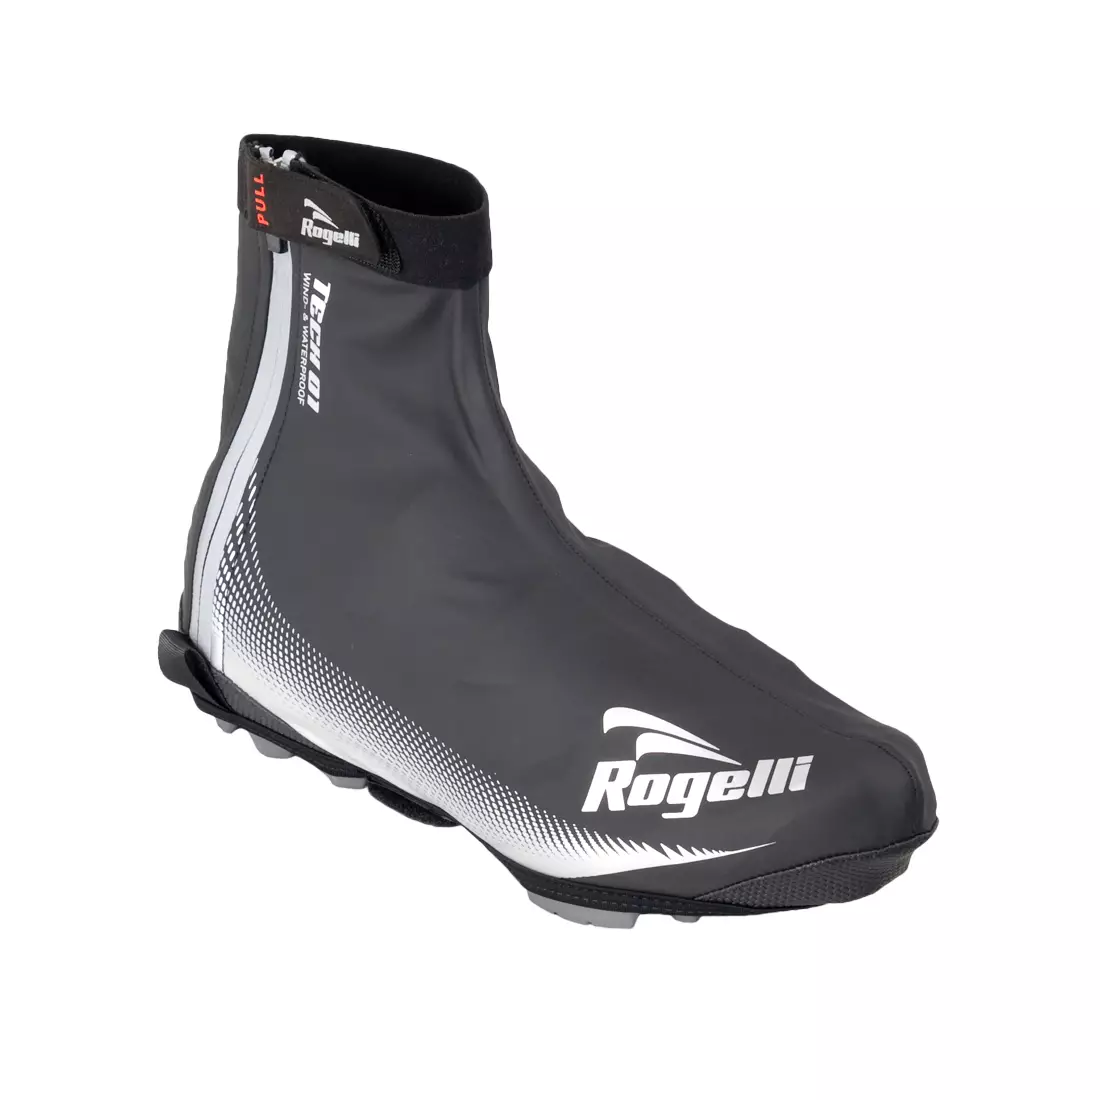 ROGELLI FIANDREX - Huse pentru pantofi de ciclism, culoare: negru și argintiu